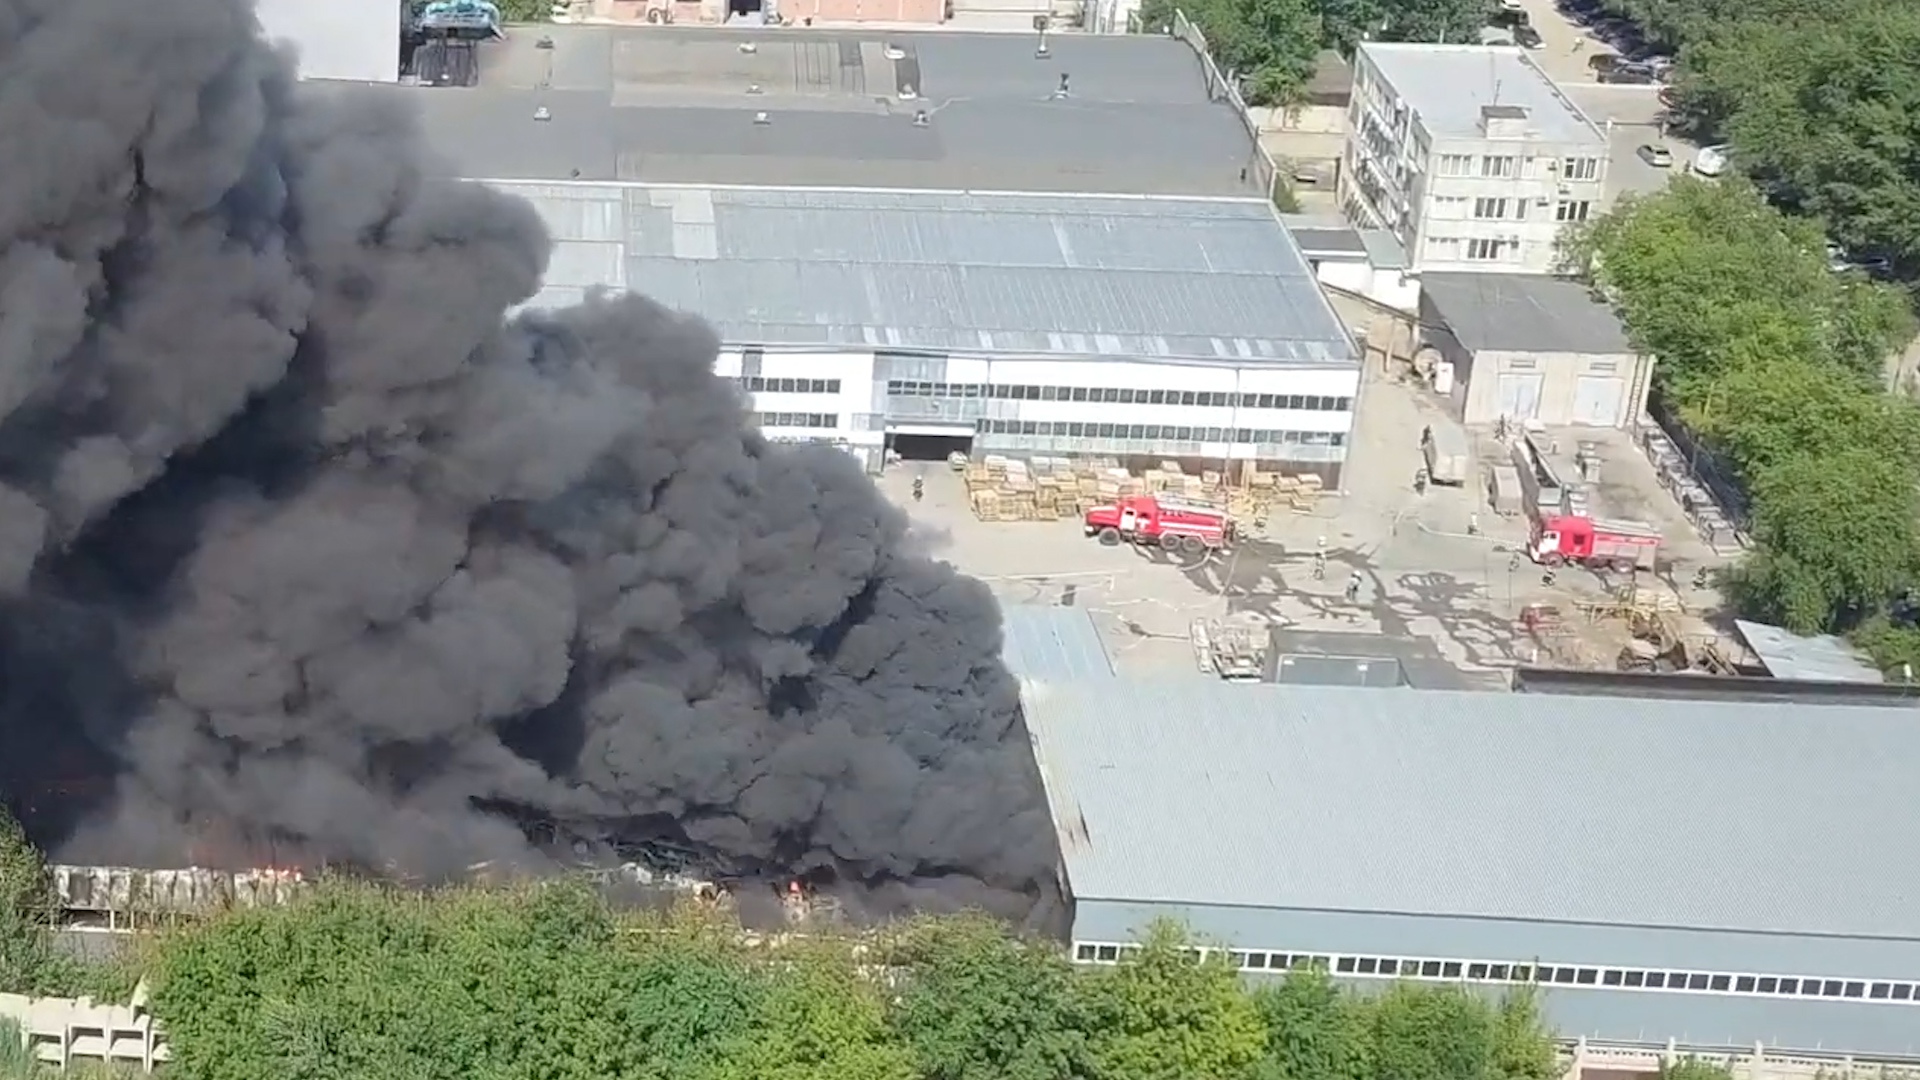 Что взорвалось в самаре сегодня. Пожар в Самаре сейчас 13 июля 2020. Пожар на складе в Самаре 13 июля. Пожар на лакокрасочном заводе в Самаре. Взрыв завода в Самаре 2020.